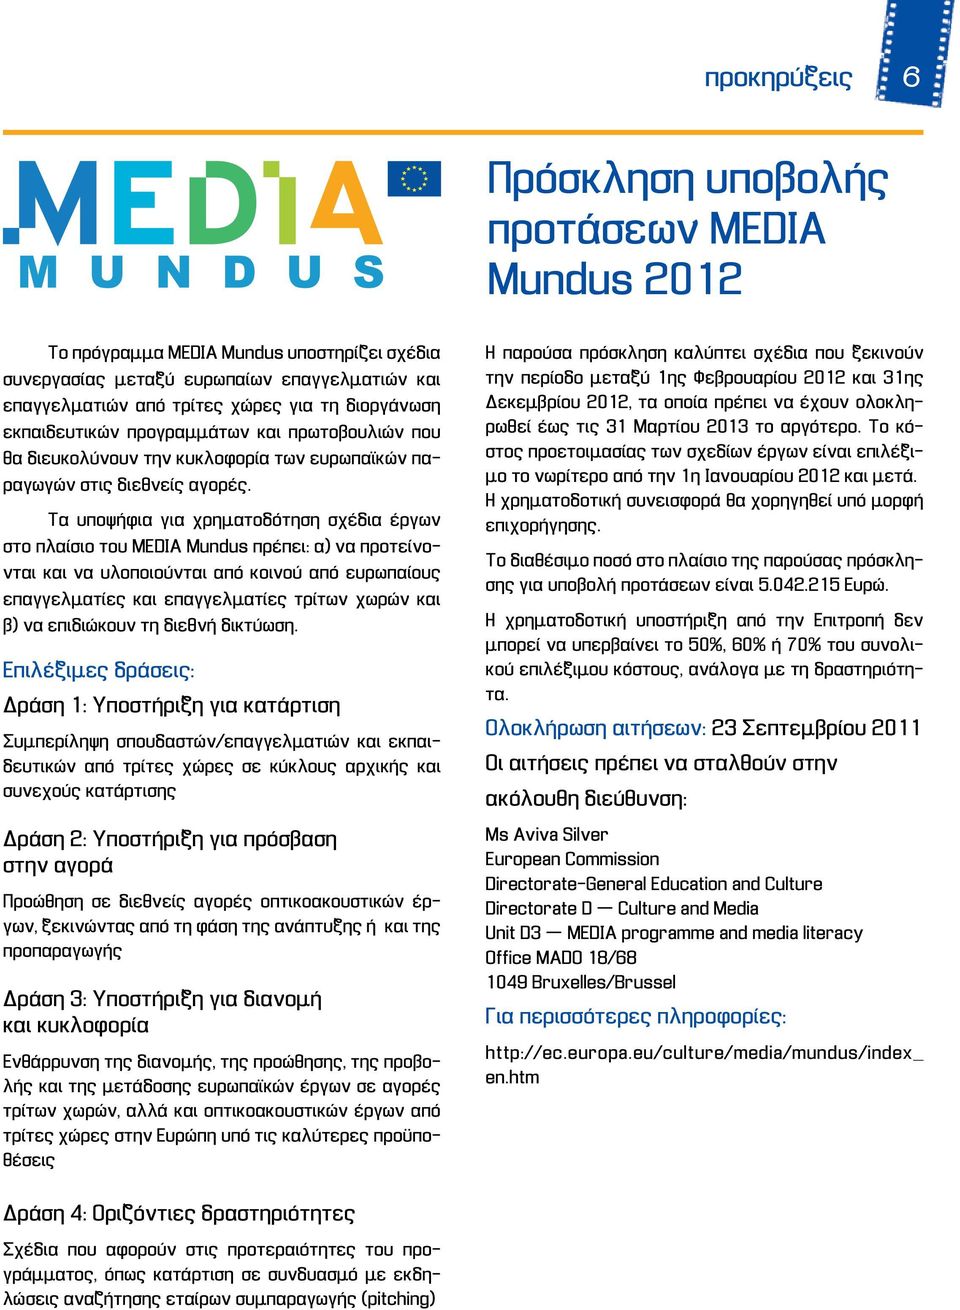 Τα υποψήφια για χρηματοδότηση σχέδια έργων στο πλαίσιο του MEDIA Mundus πρέπει: α) να προτείνονται και να υλοποιούνται από κοινού από ευρωπαίους επαγγελματίες και επαγγελματίες τρίτων χωρών και β) να